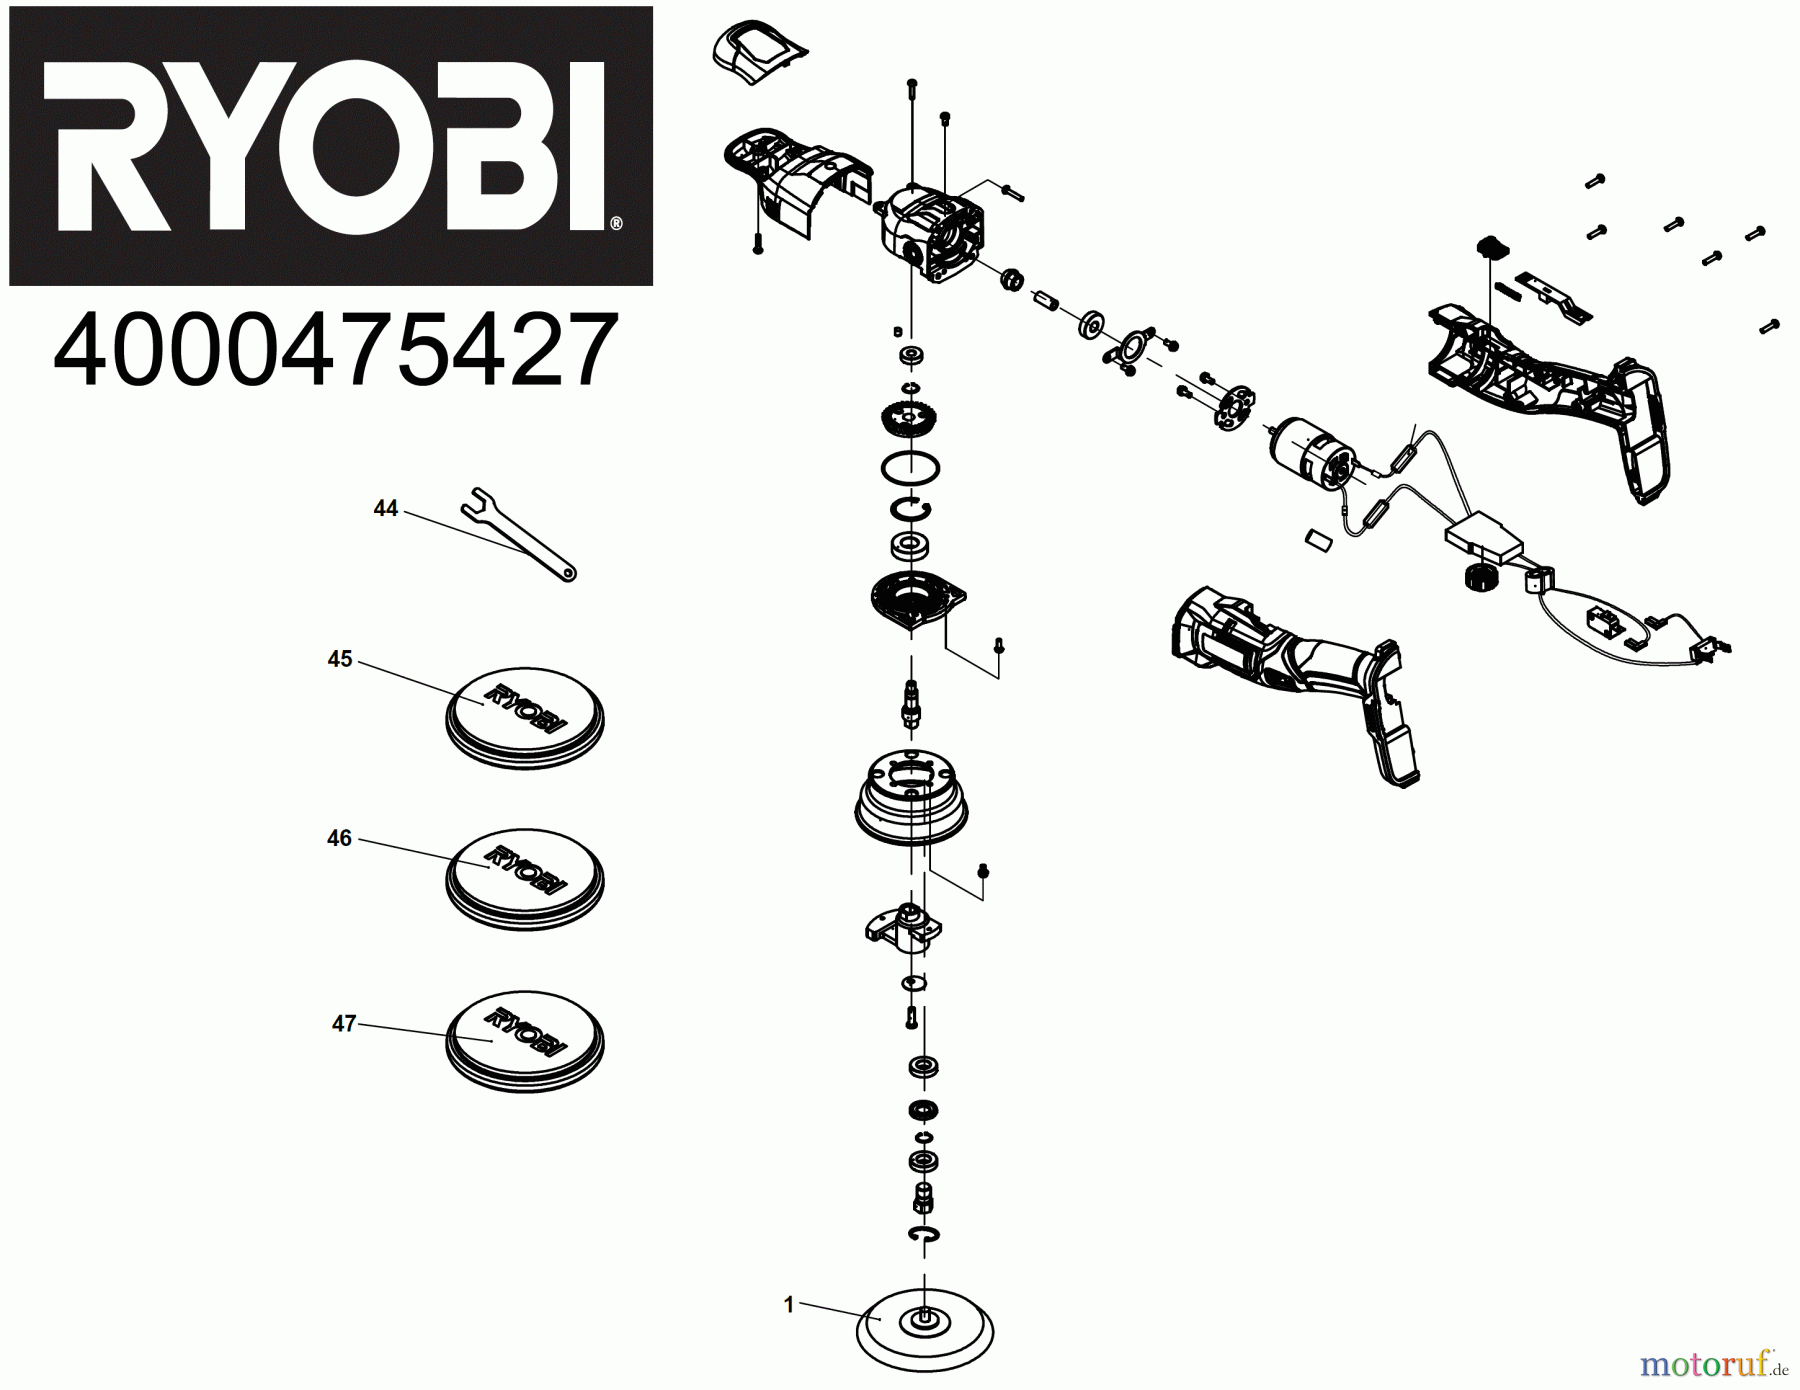  Ryobi Schleifgeräte Schleif- und Poliergeräte R18P Seite 1